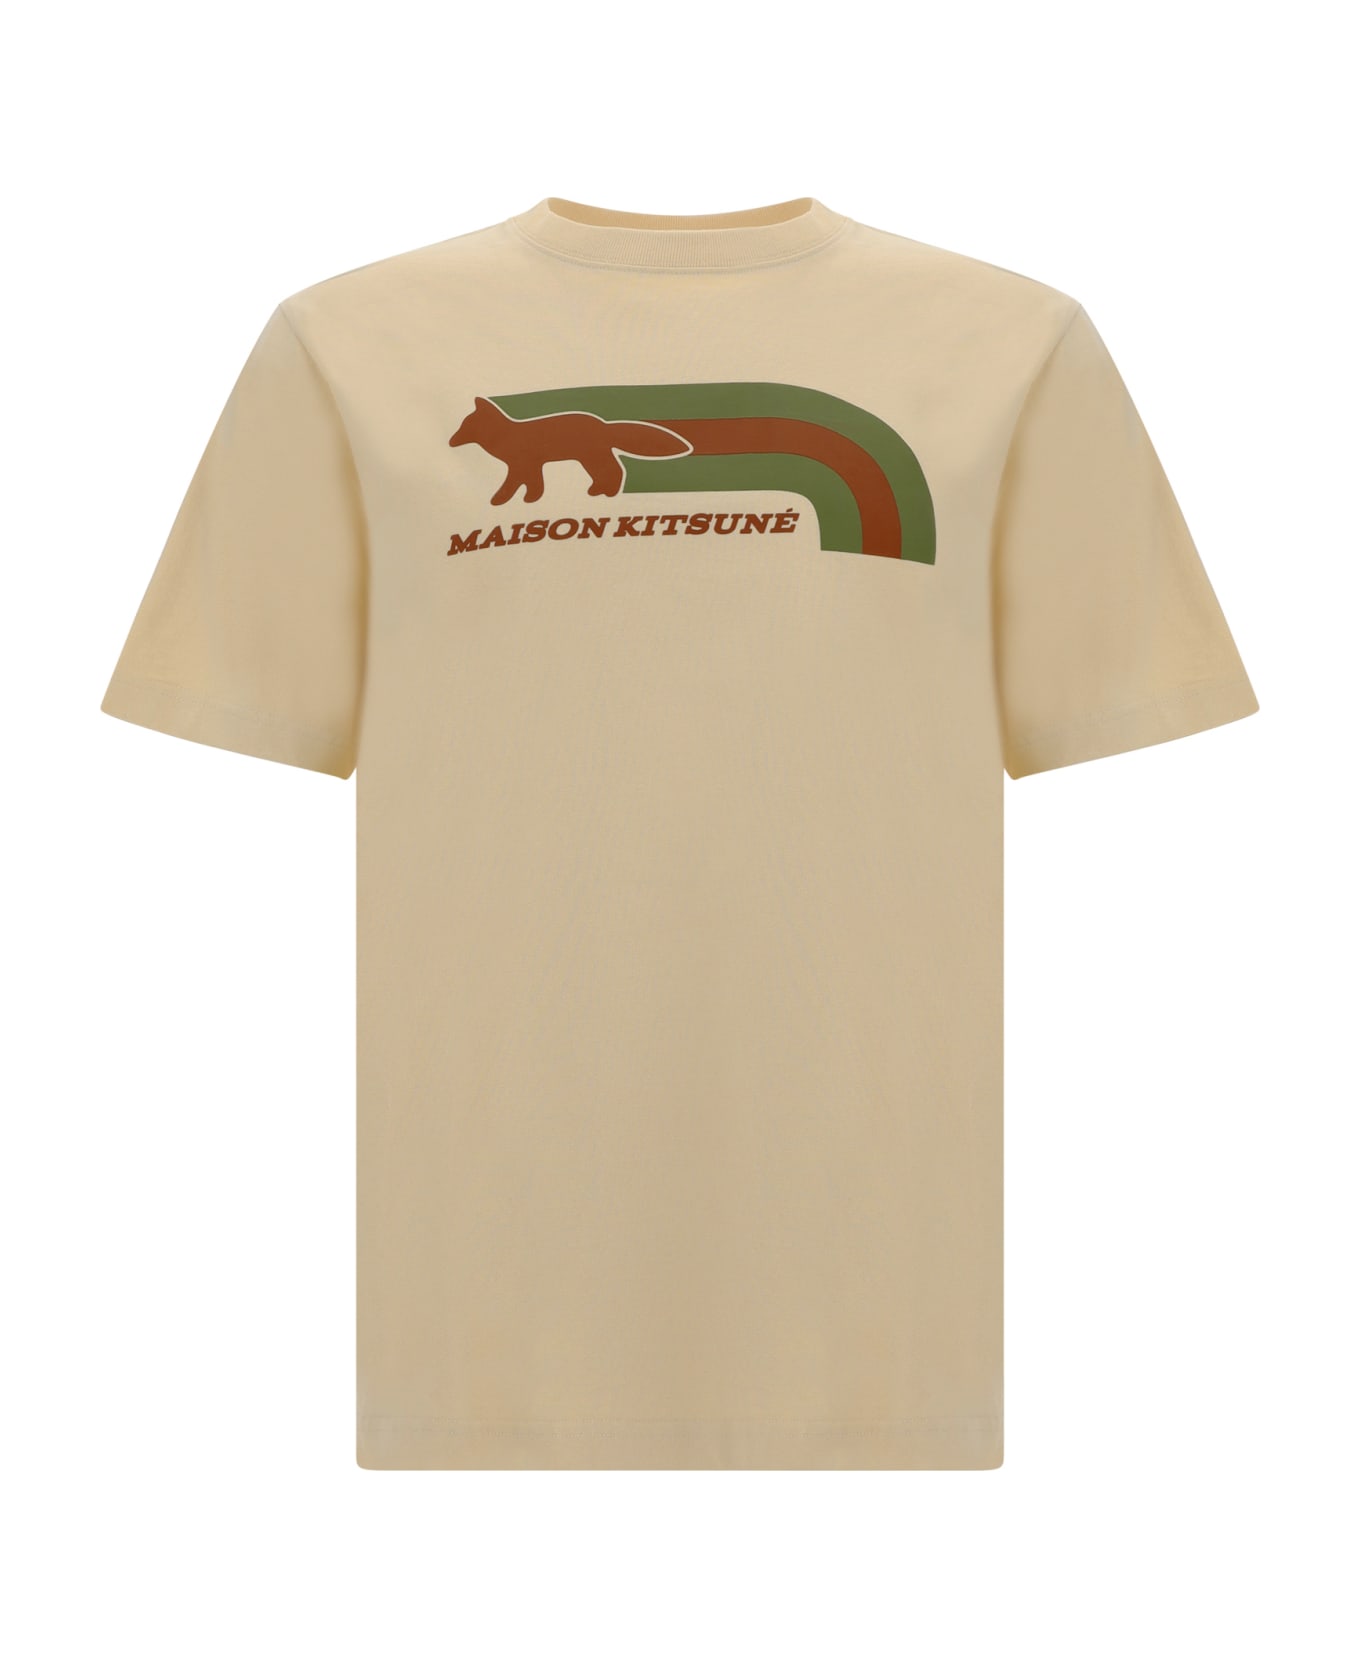 Maison Kitsuné T-shirt - Wheat シャツ